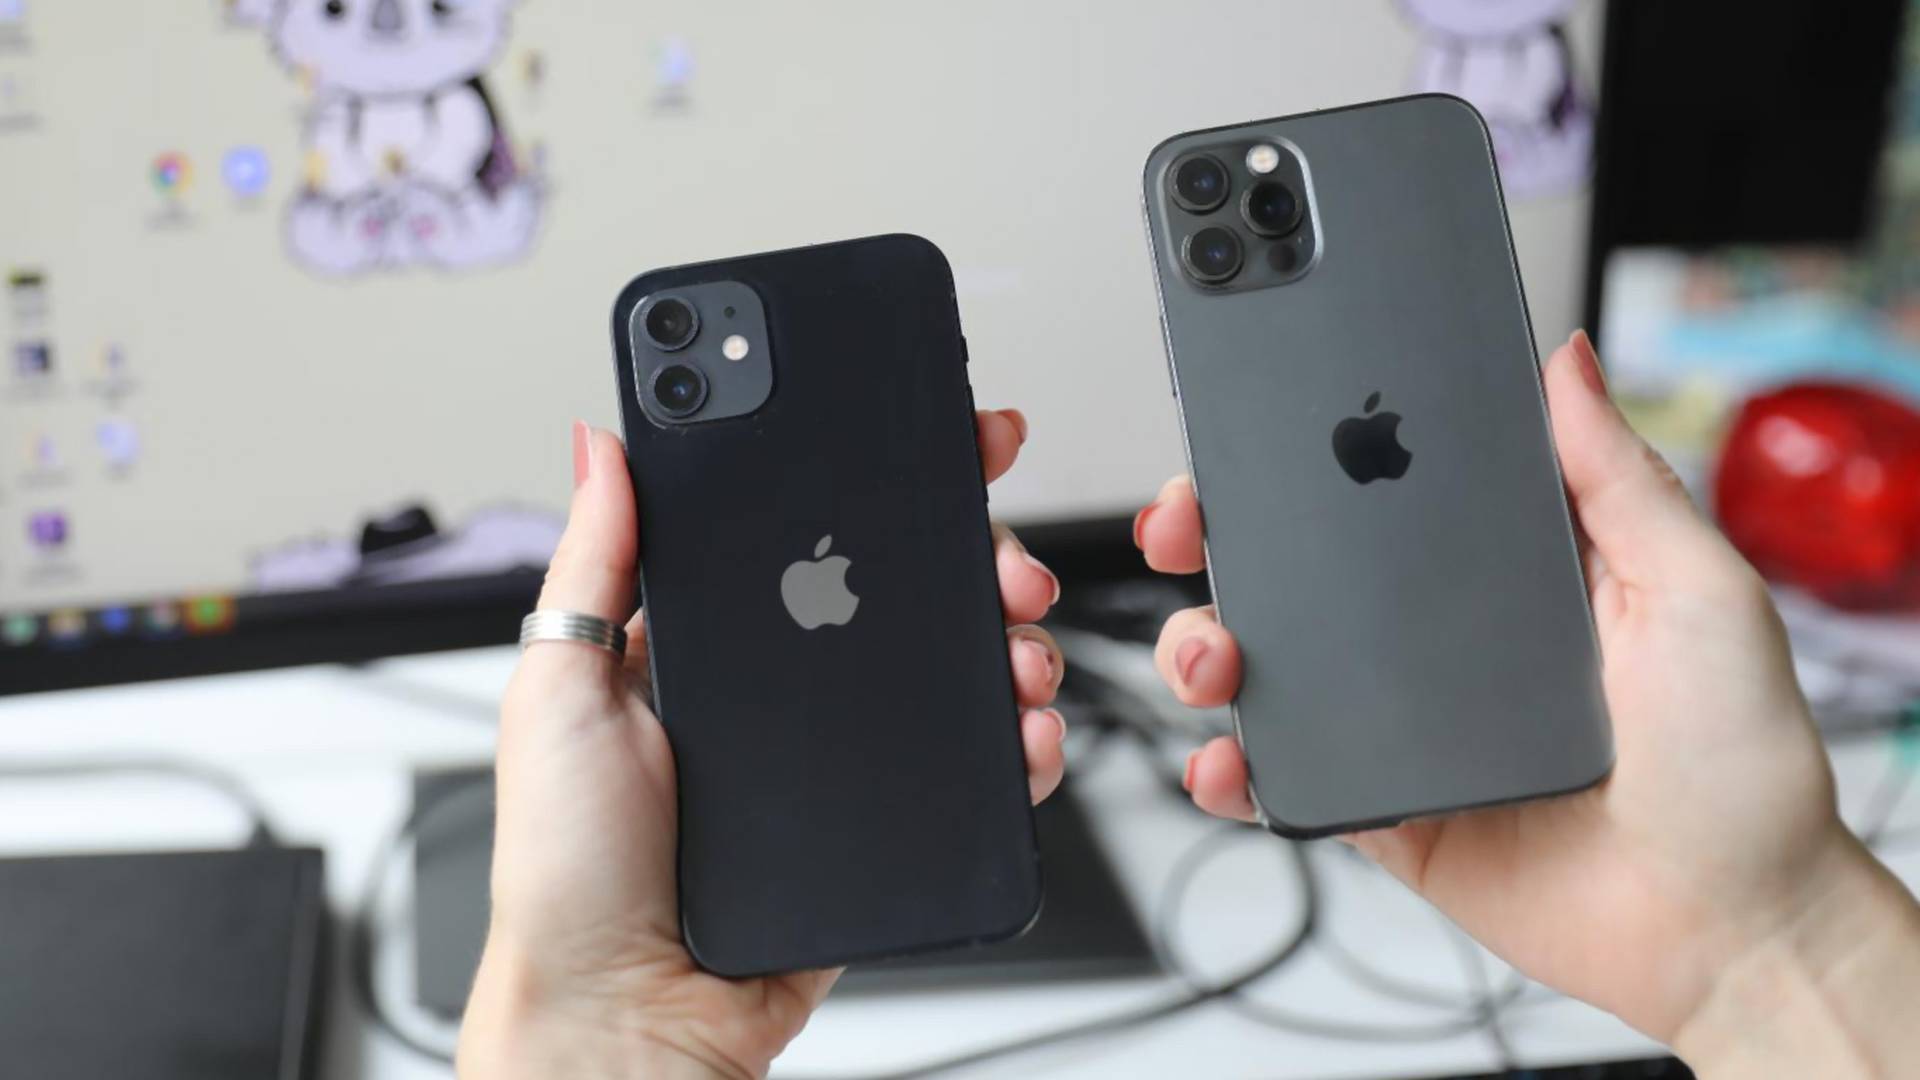 Probali smo iPhone 12 i iPhone 12 Pro - vredi li sva frka oko novih Apple telefona